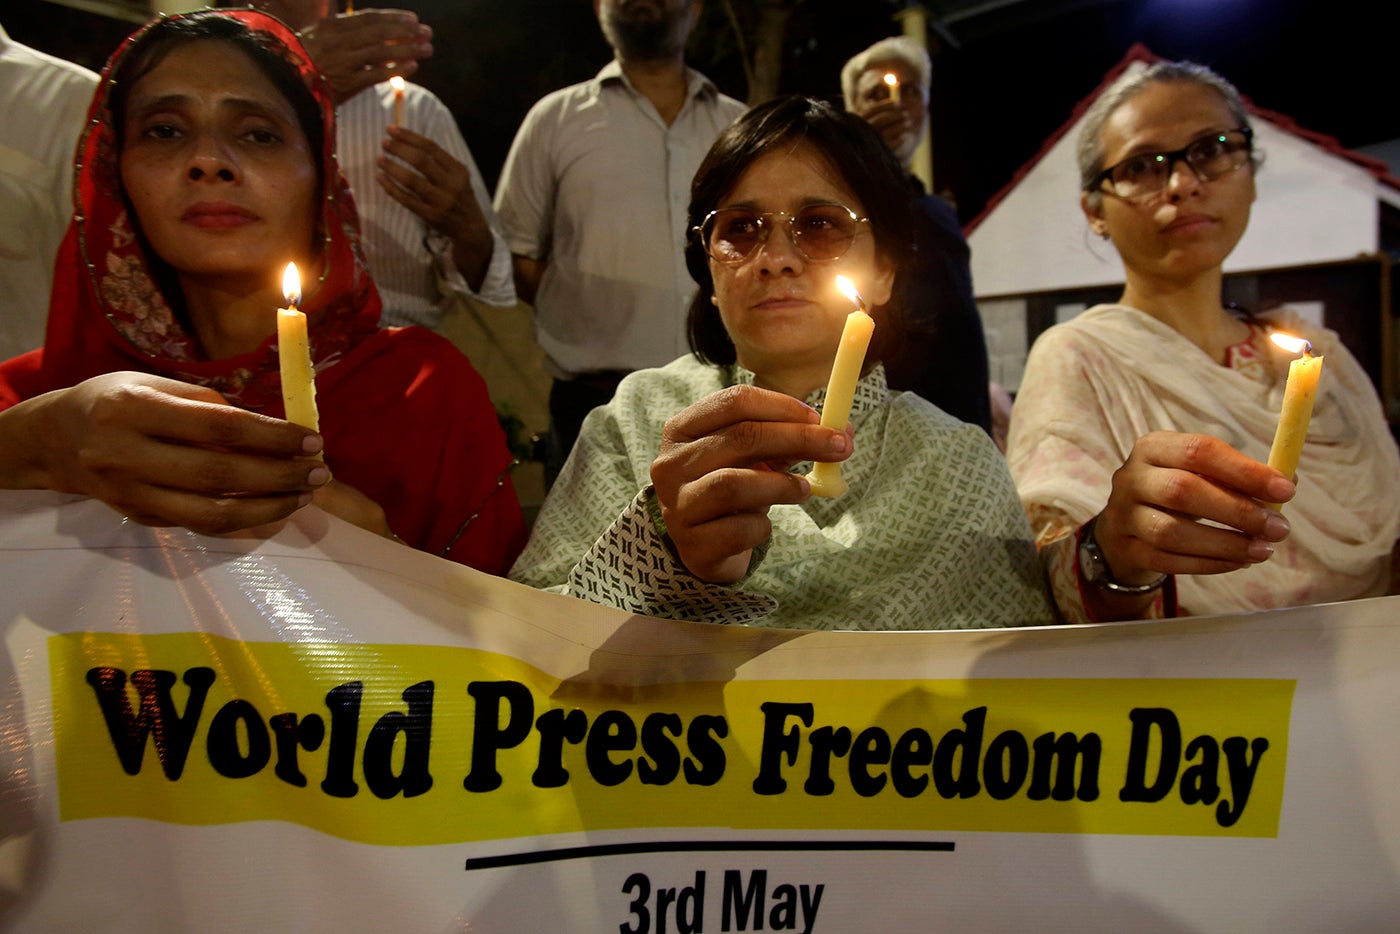 کراچی، پاکستان میں پاکستانی صحافی 03 مئی 2019 کو صحافت کے عالمی دن کے موقع پر شمعیں روشن کر رہے ہیں۔ ©2019  اے پی فوٹو/ فردید خان